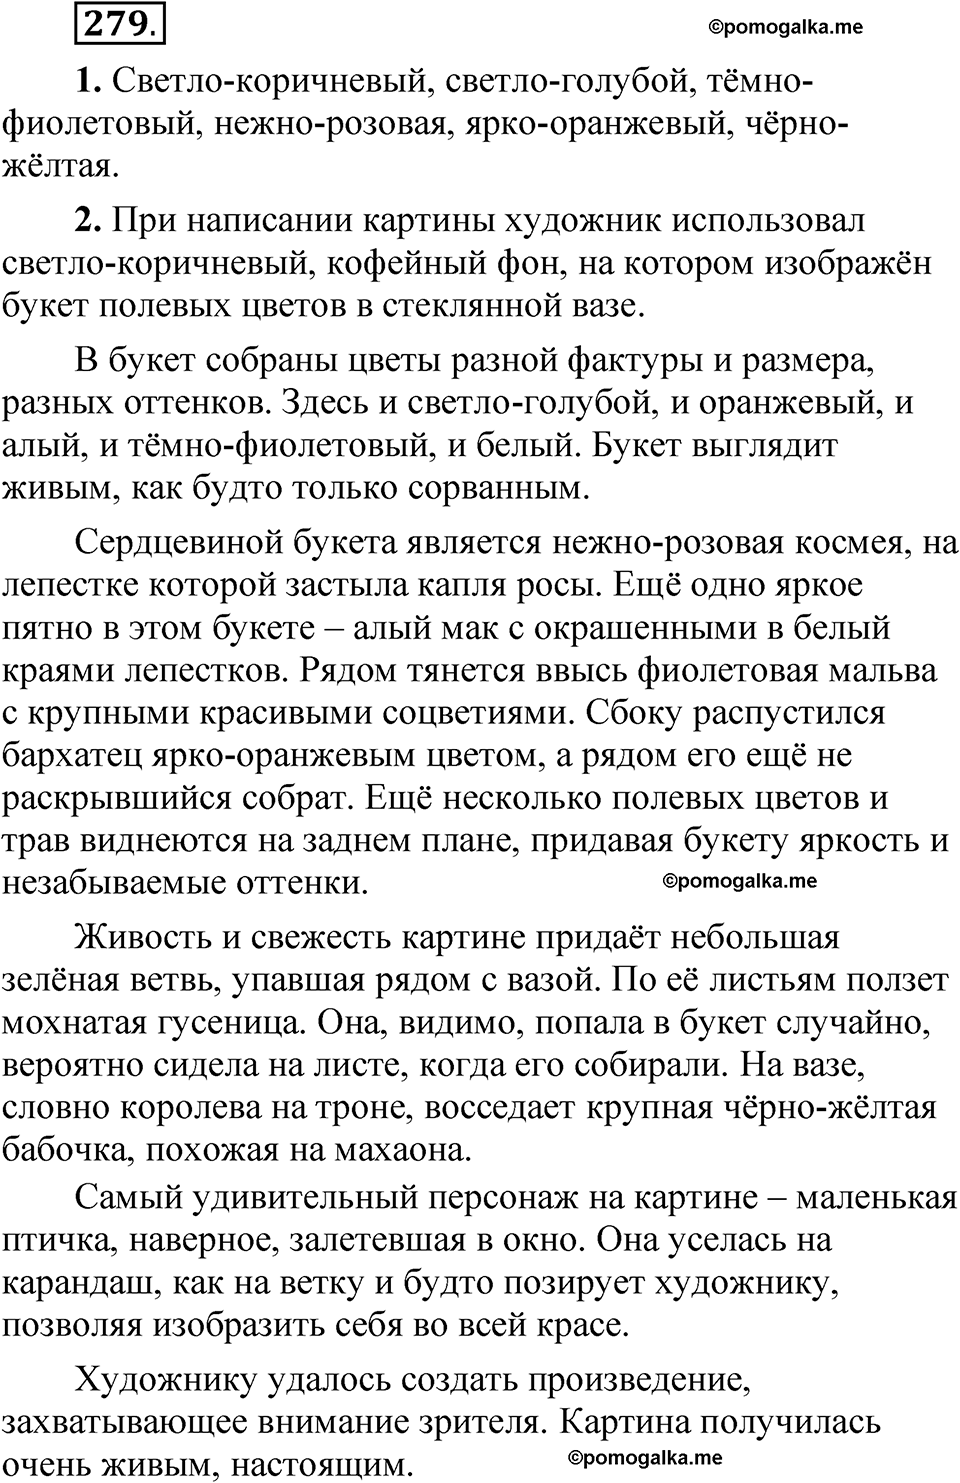 страница 193 упражнение 279 русский язык 5 класс Быстрова, Кибирева 2 часть 2021 год